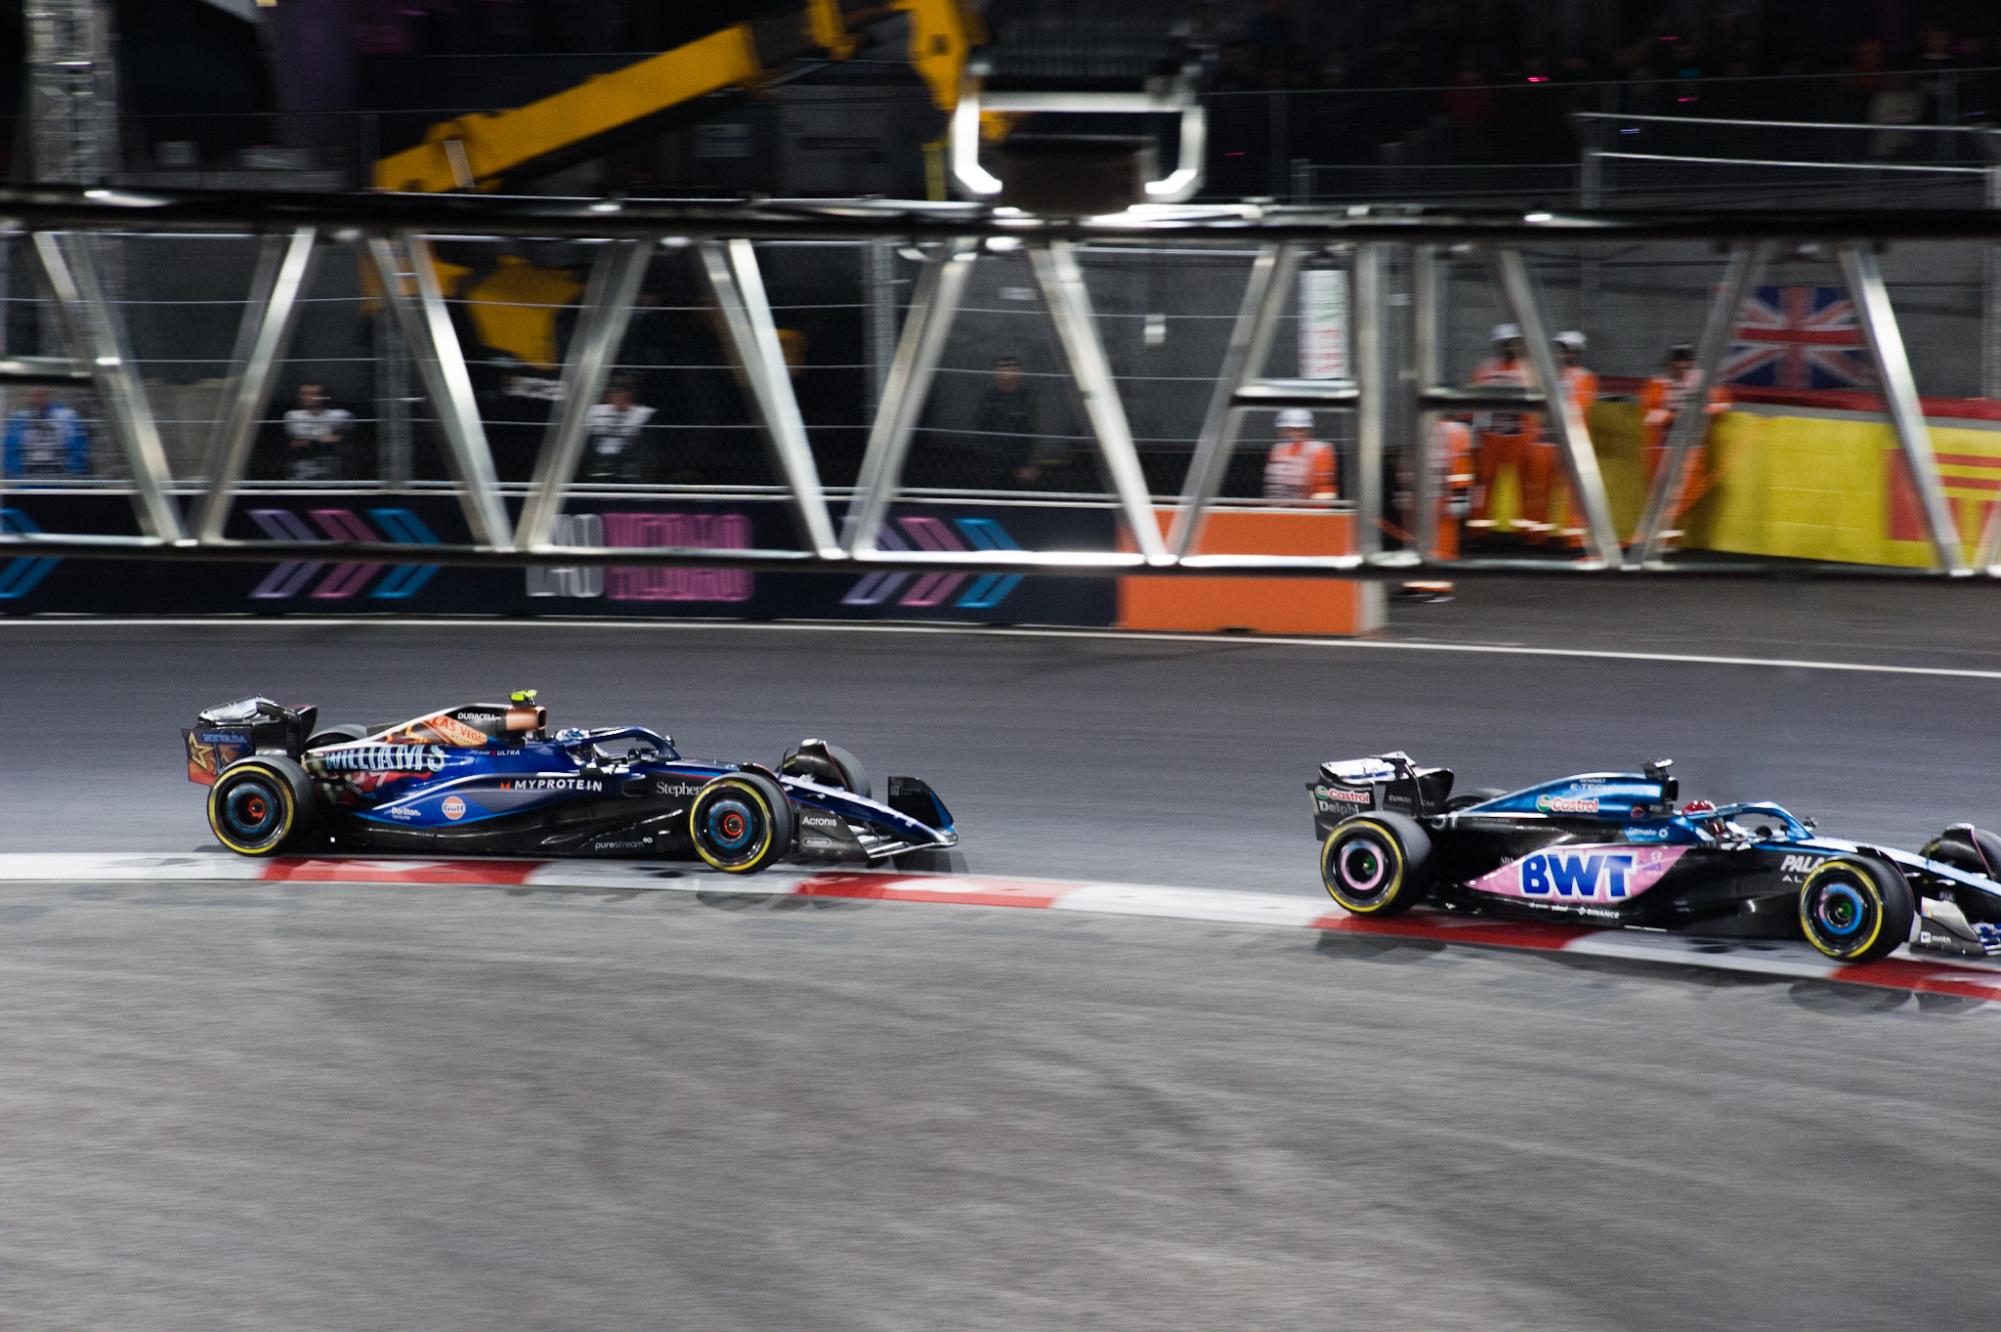 Ferrari’s Charles Leclerc chases Red Bull’s Max Verstappen for the race win in Las Vegas.